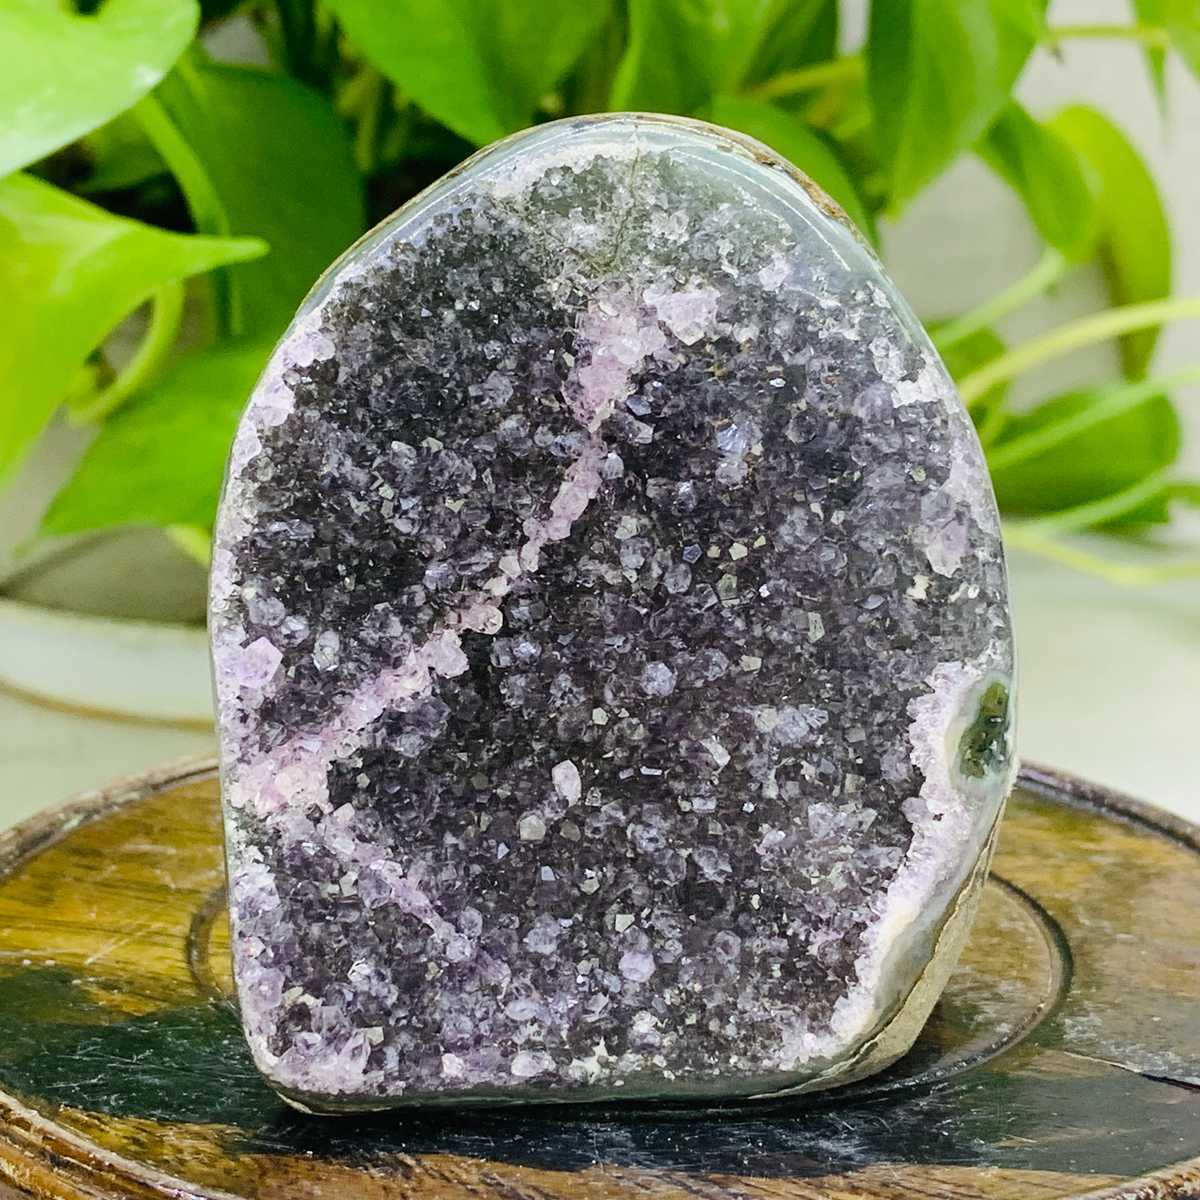 220g Natural Amethyst Geode Mineral Specimen Crystal Quartz Energy Decoration